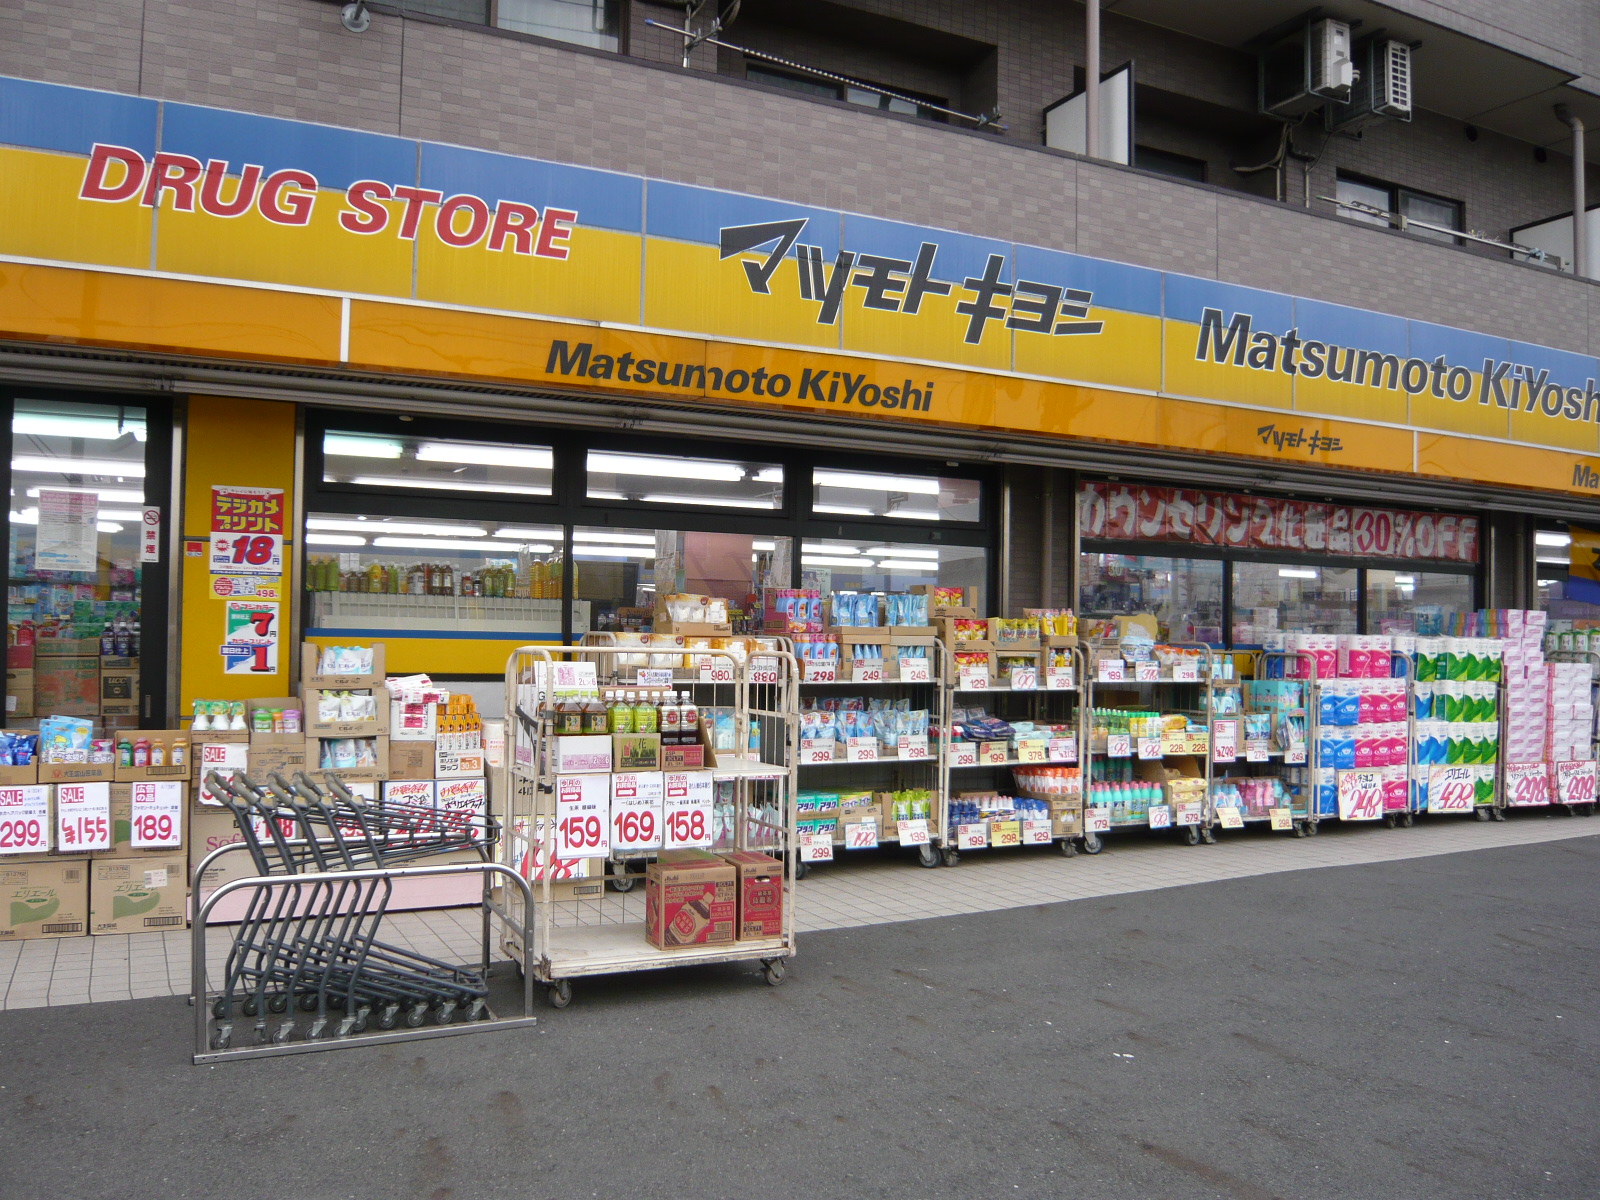 Dorakkusutoa. Matsumotokiyoshi Kirindo Awaji store 93m to (drugstore)